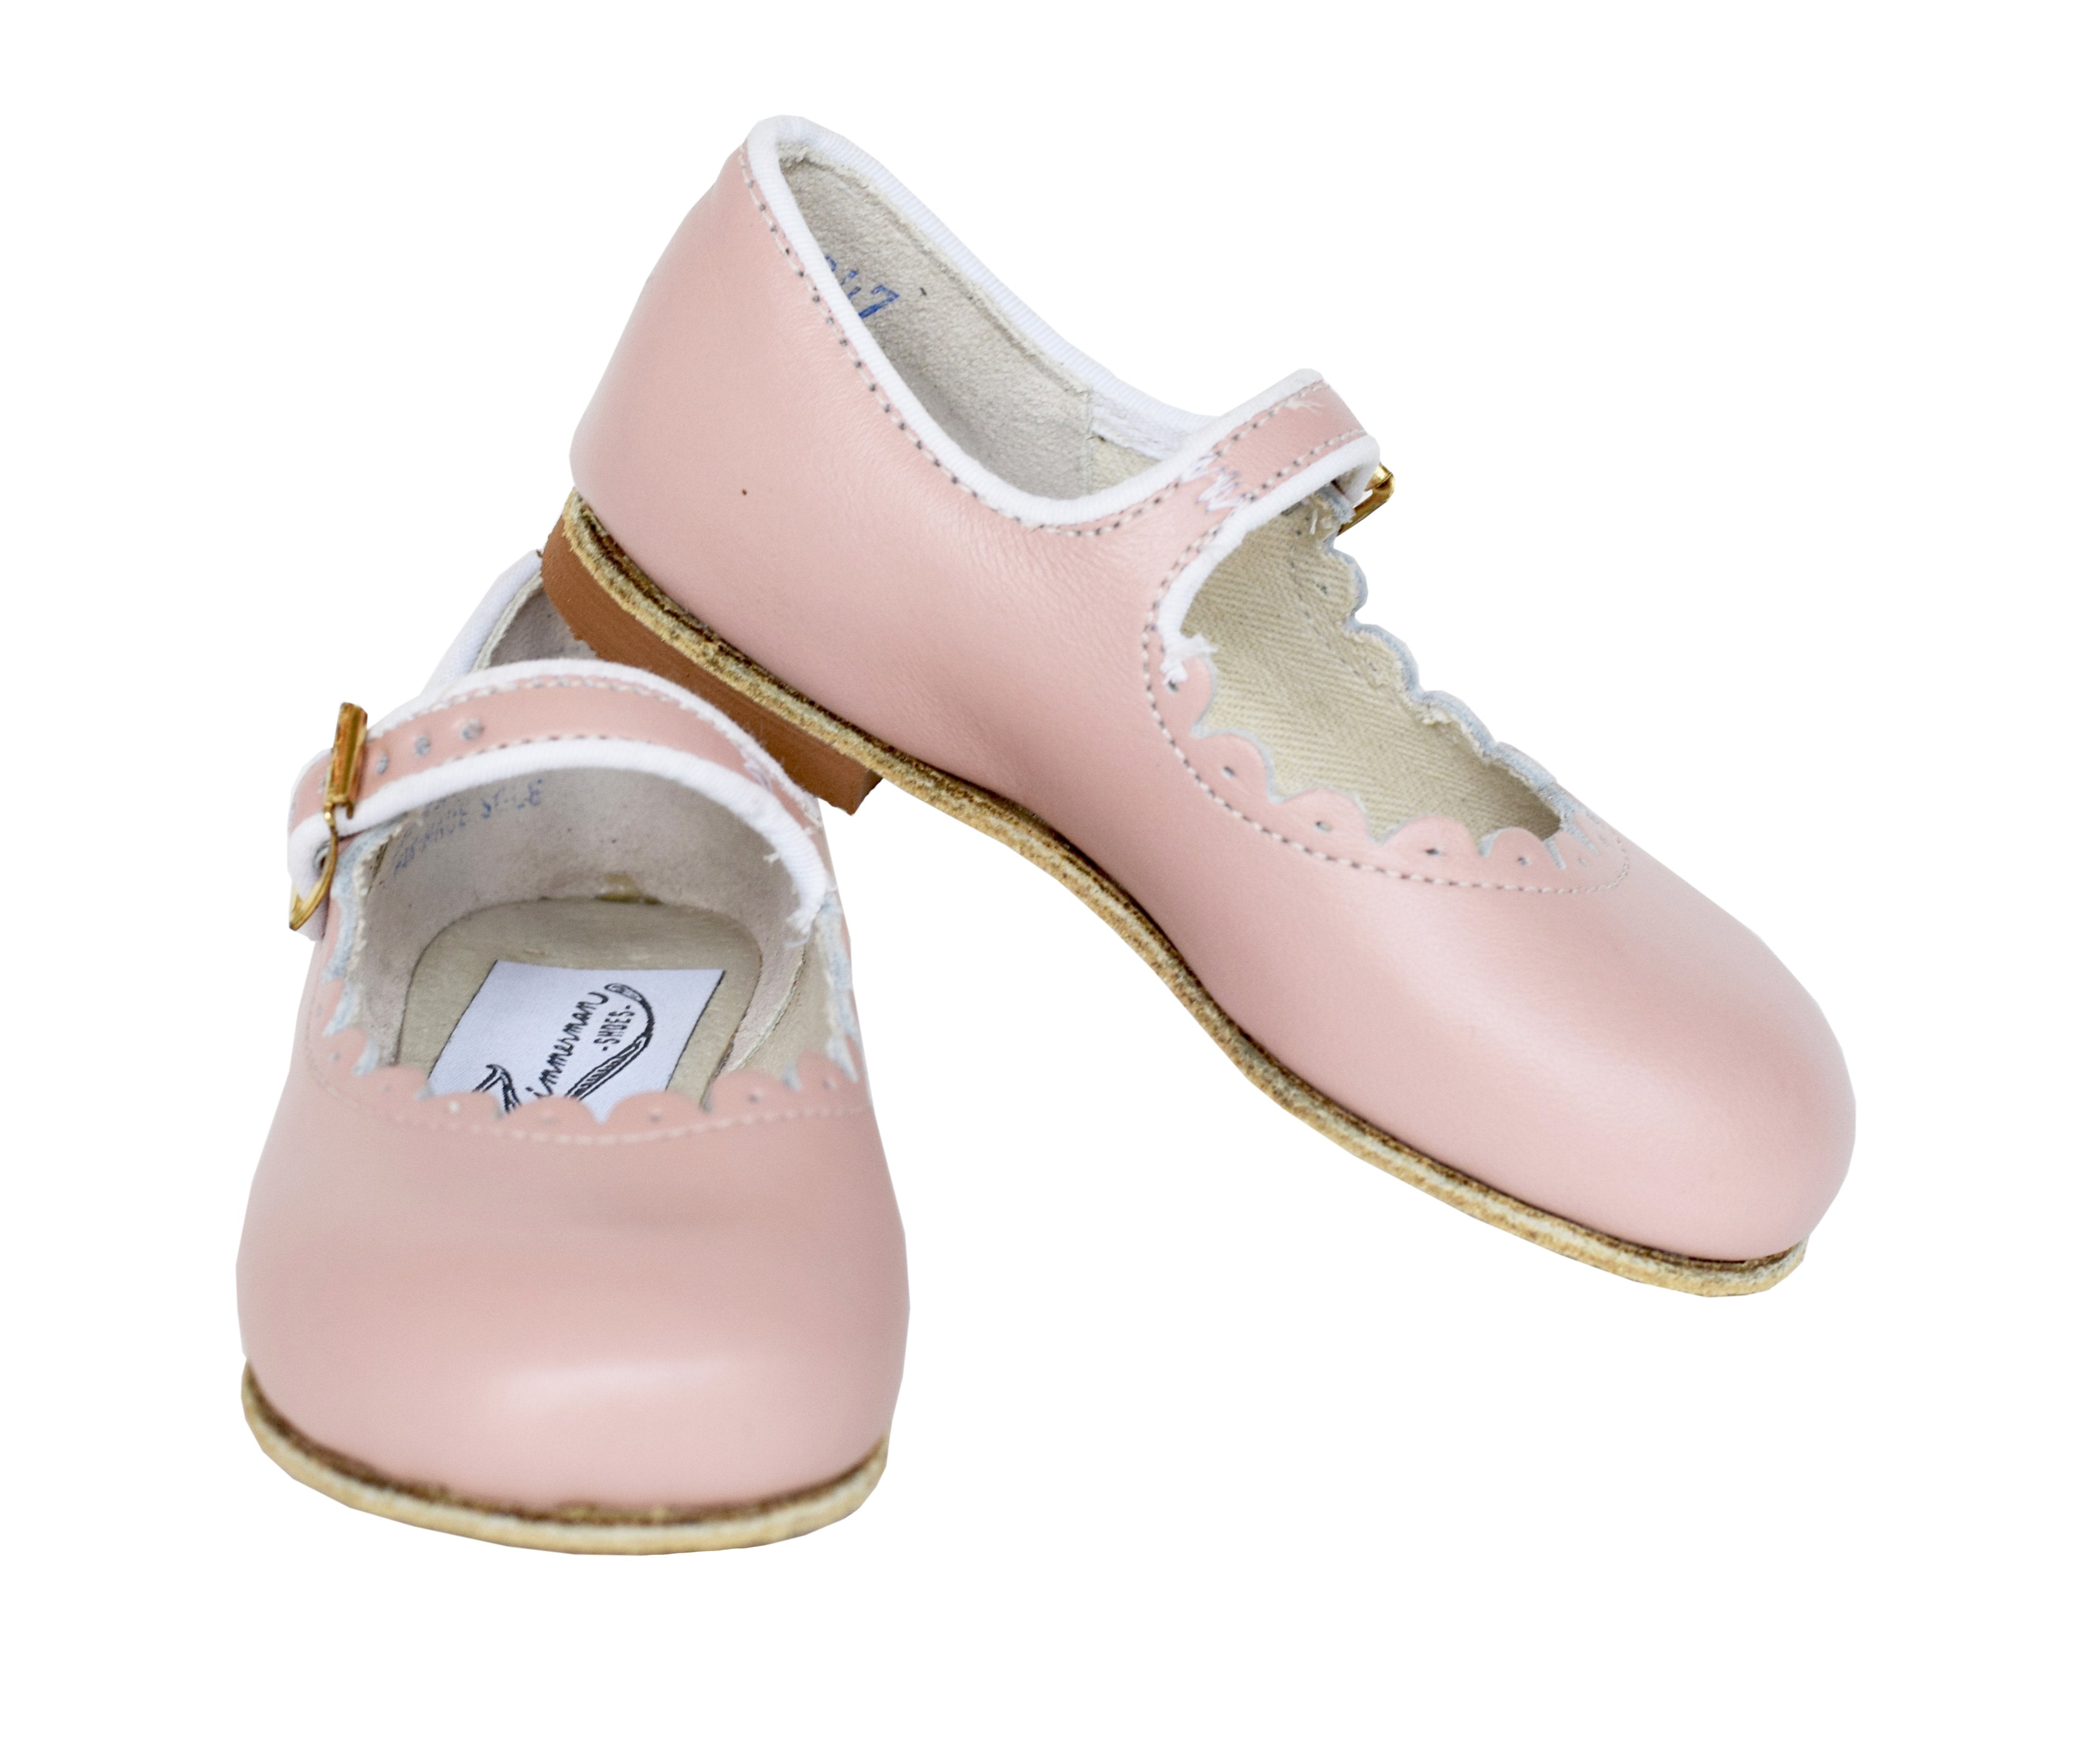 Zimmerman Shoes blush pink mary jane scalloped shoe